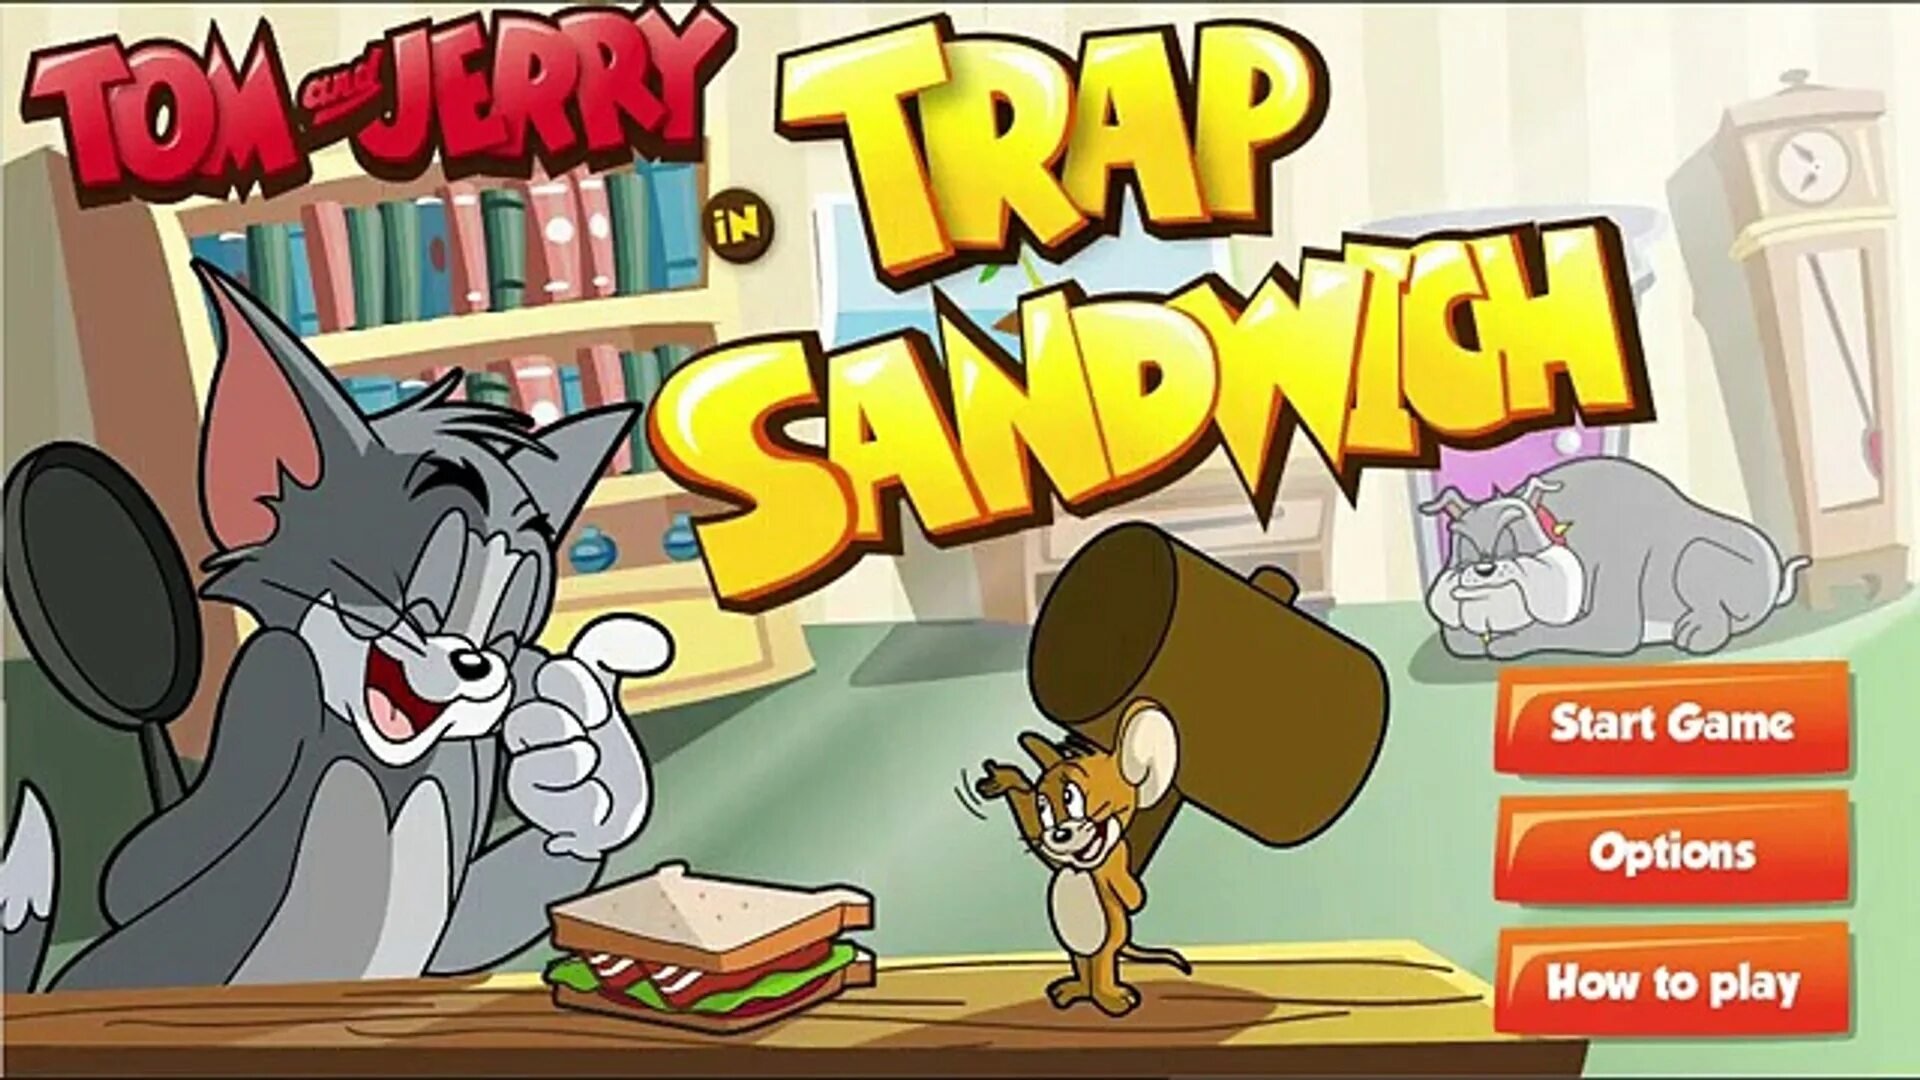 Tom and Jerry игра. Игры том и Джерри сэндвич. Том и Джерри игра бродилка. Том и Джерри ЛОВУШКА. Игра тома и джерри на двоих